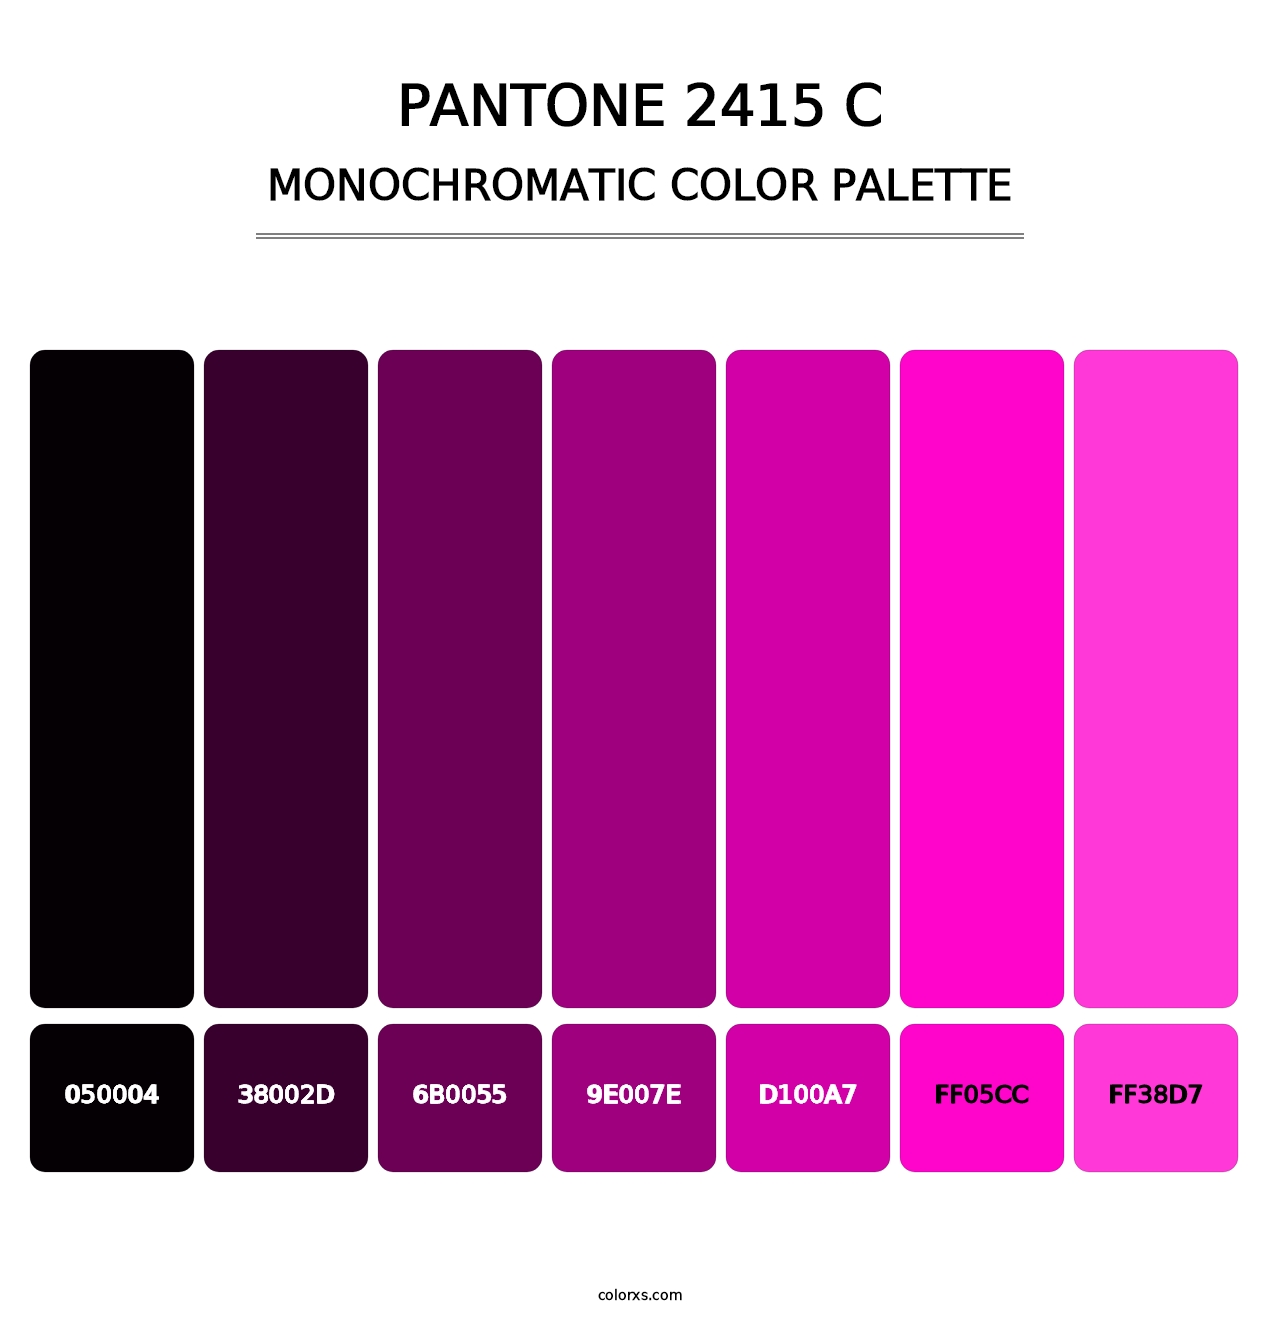 PANTONE 2415 C - Monochromatic Color Palette